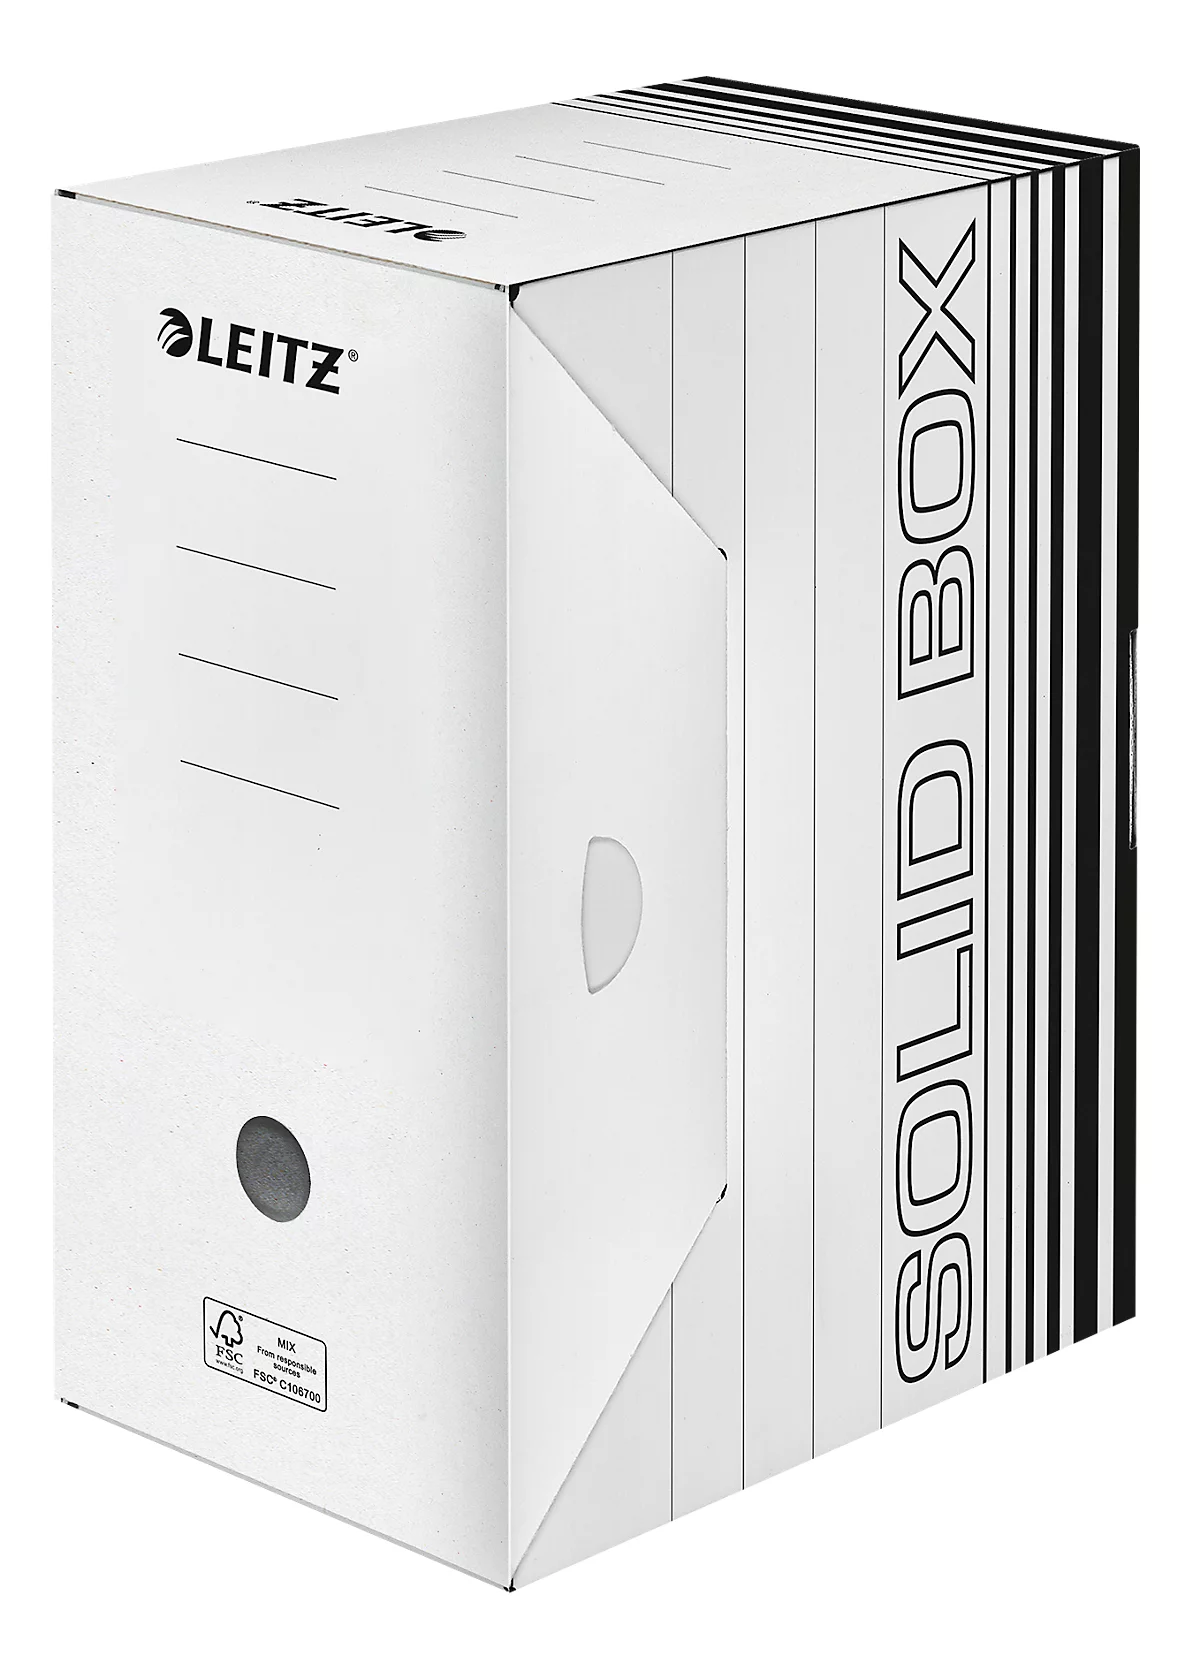 Archivschachtel Leitz Solid Box 6129 150 mm, DIN A4, für 1400 Blatt, 10 Stück, weiss